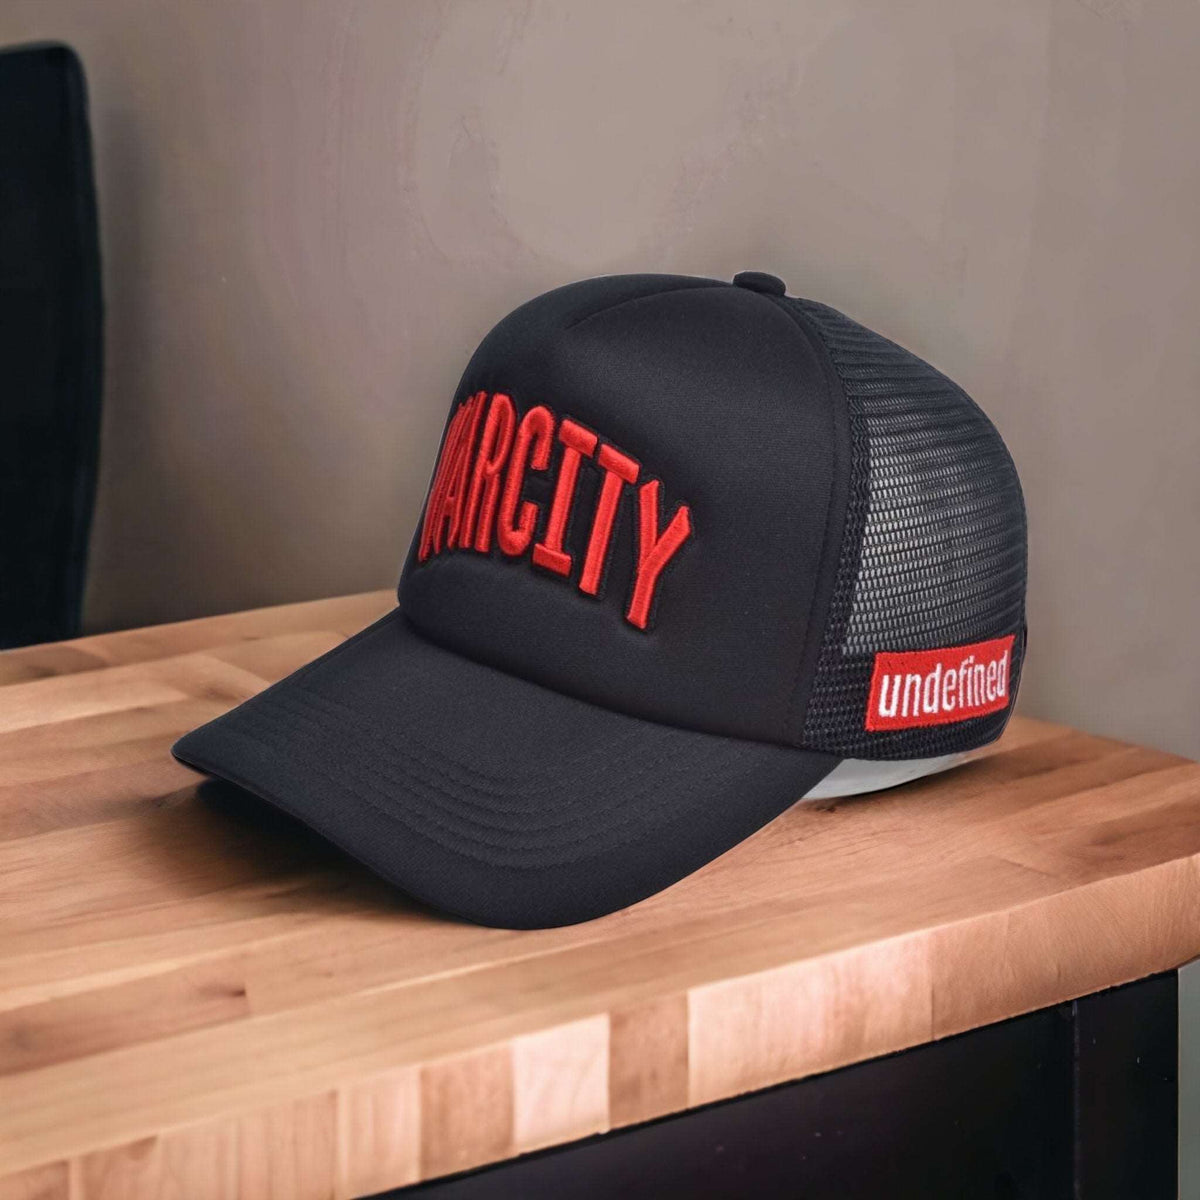 Signature Varcity ® Trucker Cap Black